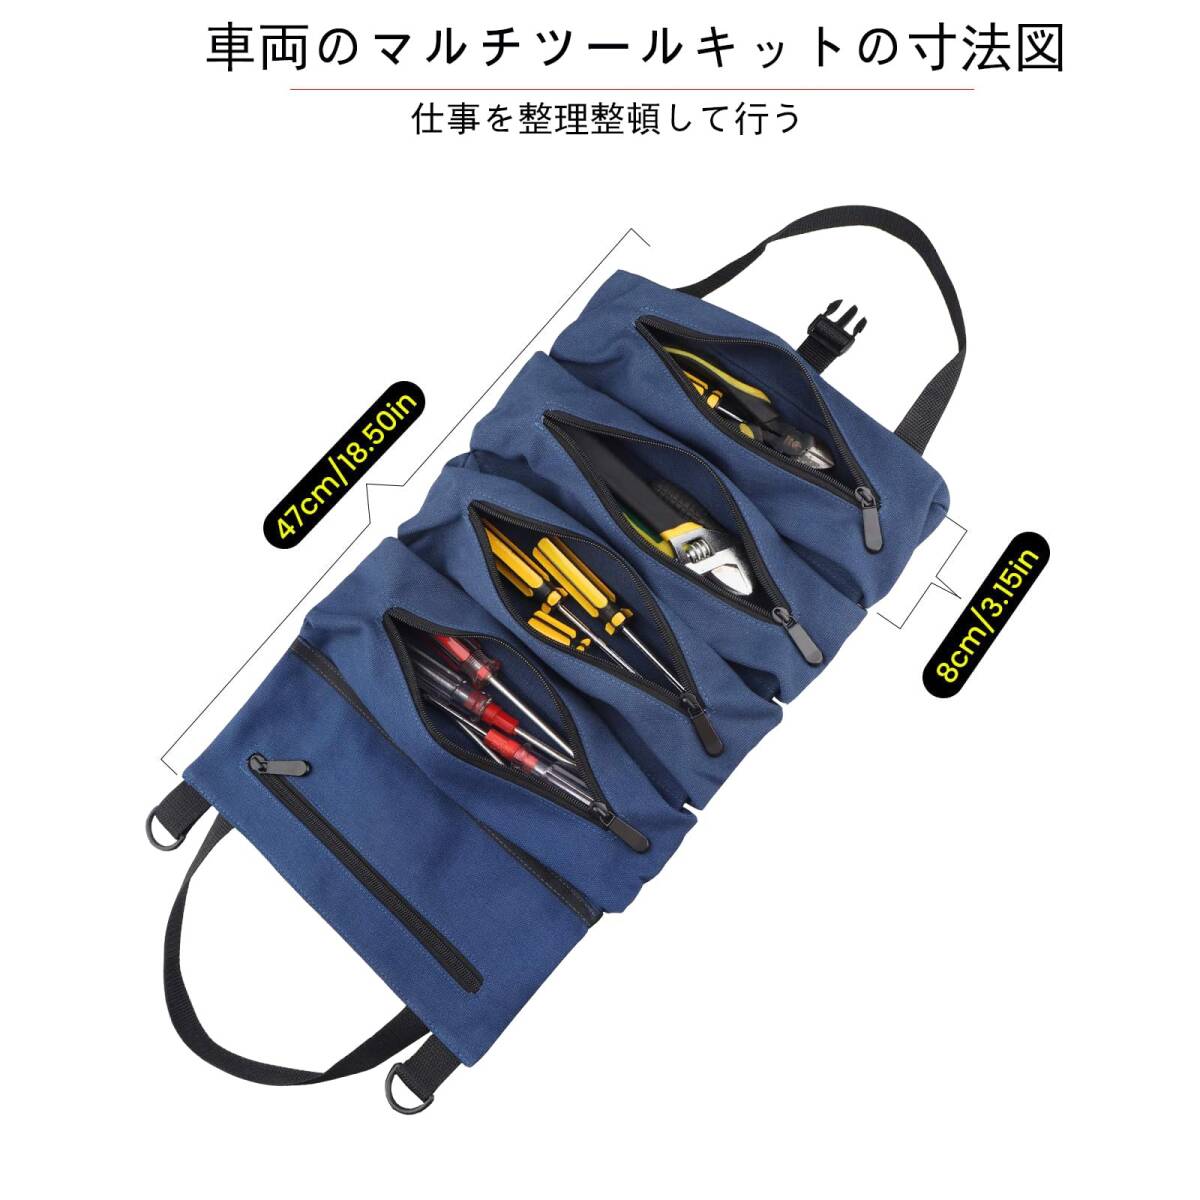 【特価商品】Chaojibao ツールロール収納袋、5つのジッパーポケットを備えたスパナロールバッグ、多目的キャンバスツールロール_画像2